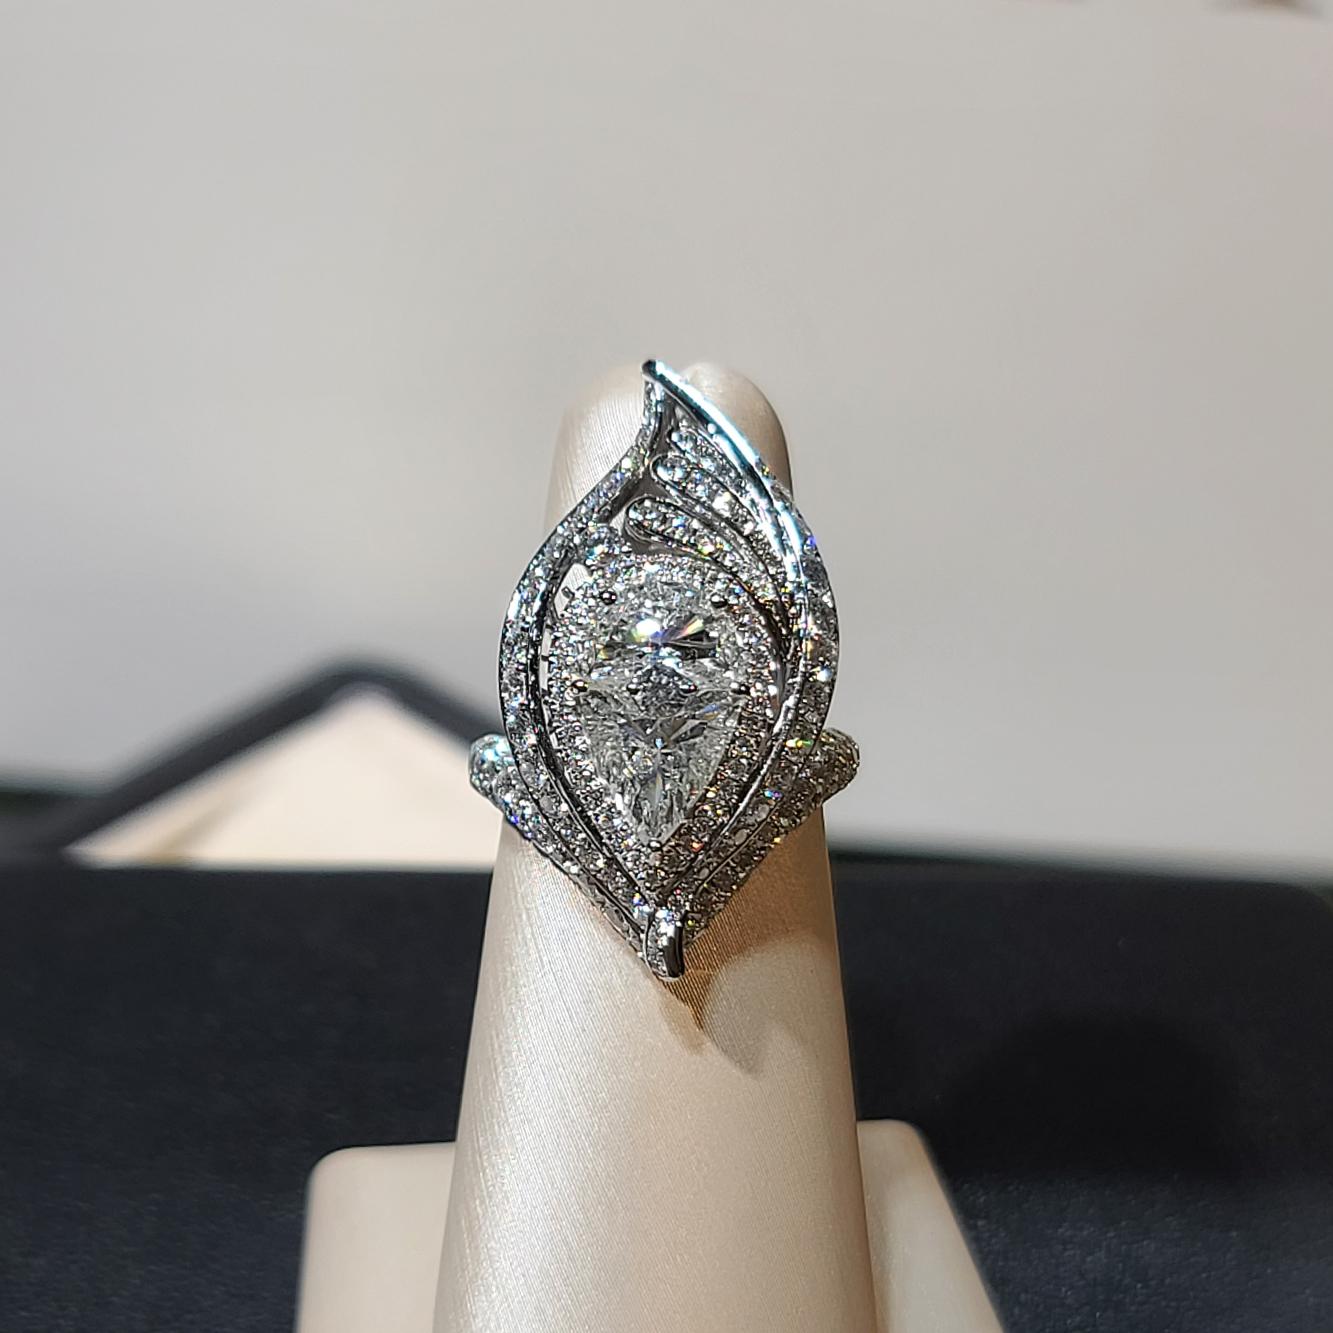 Kollektion Royal flame

Speziell geschliffener Schmuck, entworfen von unserem hauseigenen Designer - der Hauptstein wurde mit Diamanten im Dreieck- und Halbmondschliff zu einer riesigen Birnenform geformt.  es ist einzigartig und besonders! 

Weißer